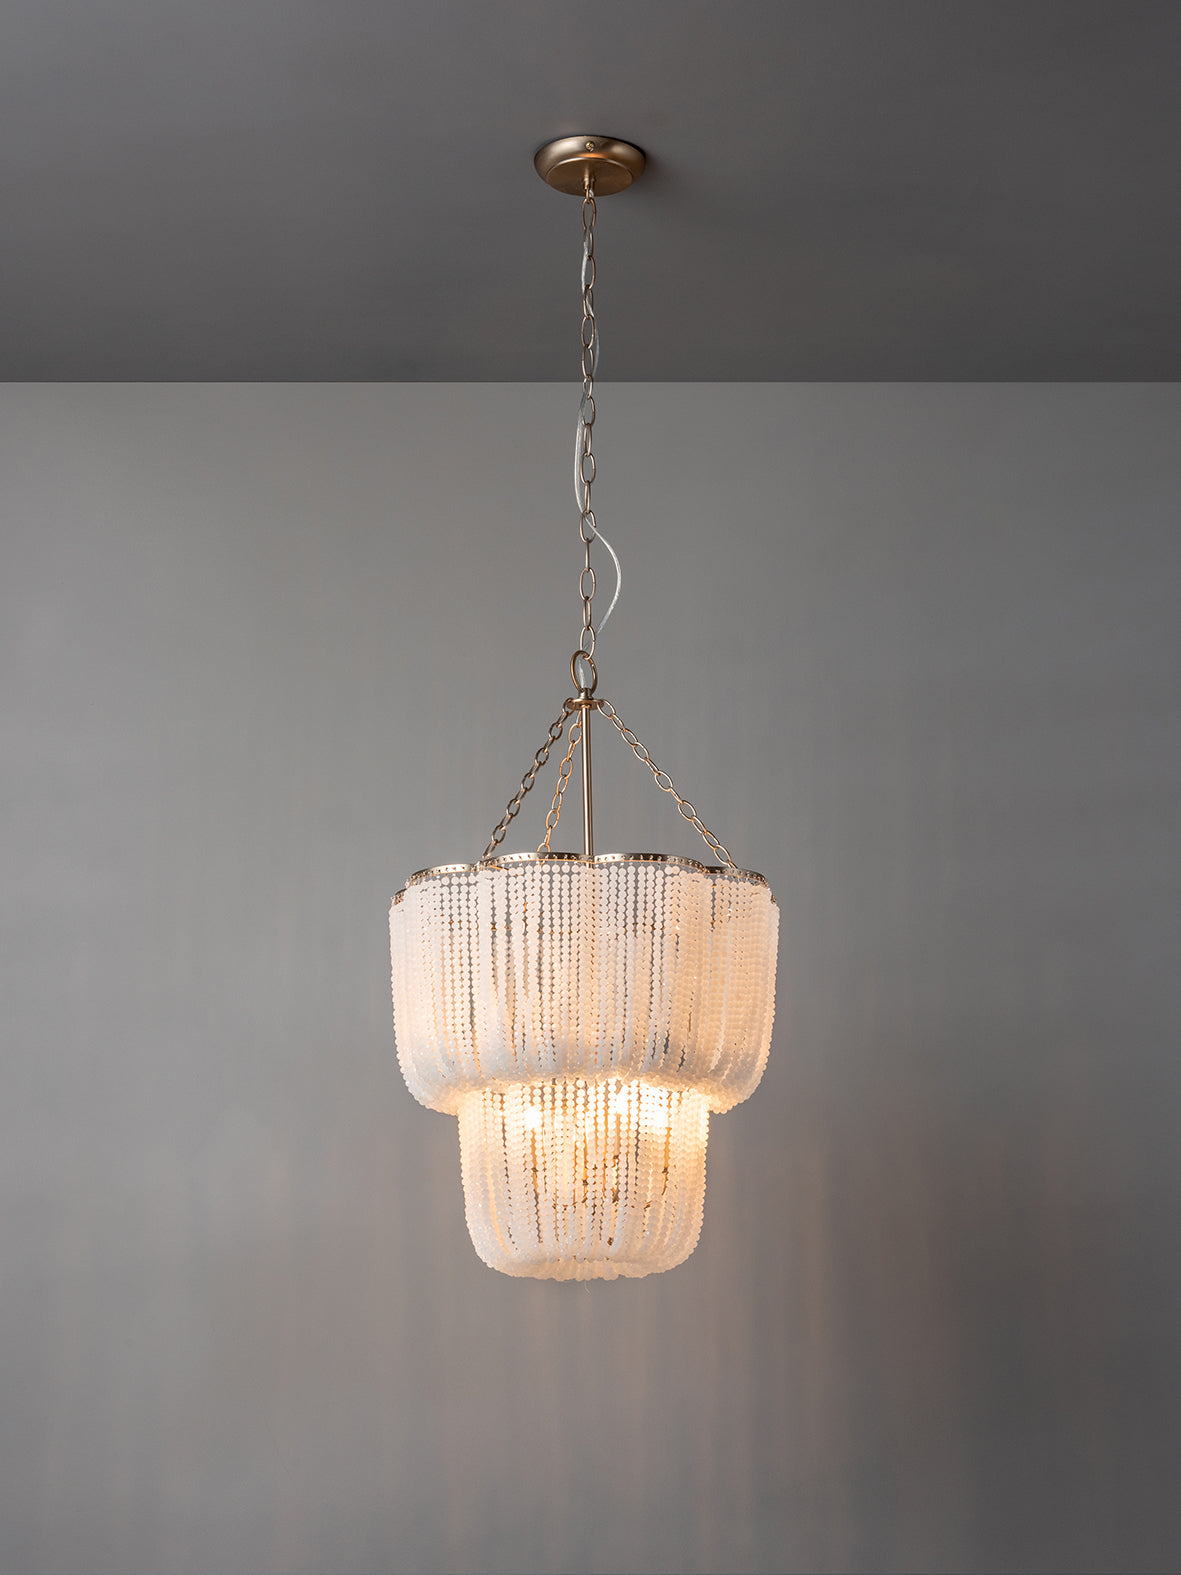 Pello - 4 light white scalloped chandelier | Chandelier | Lights & Lamps | UK